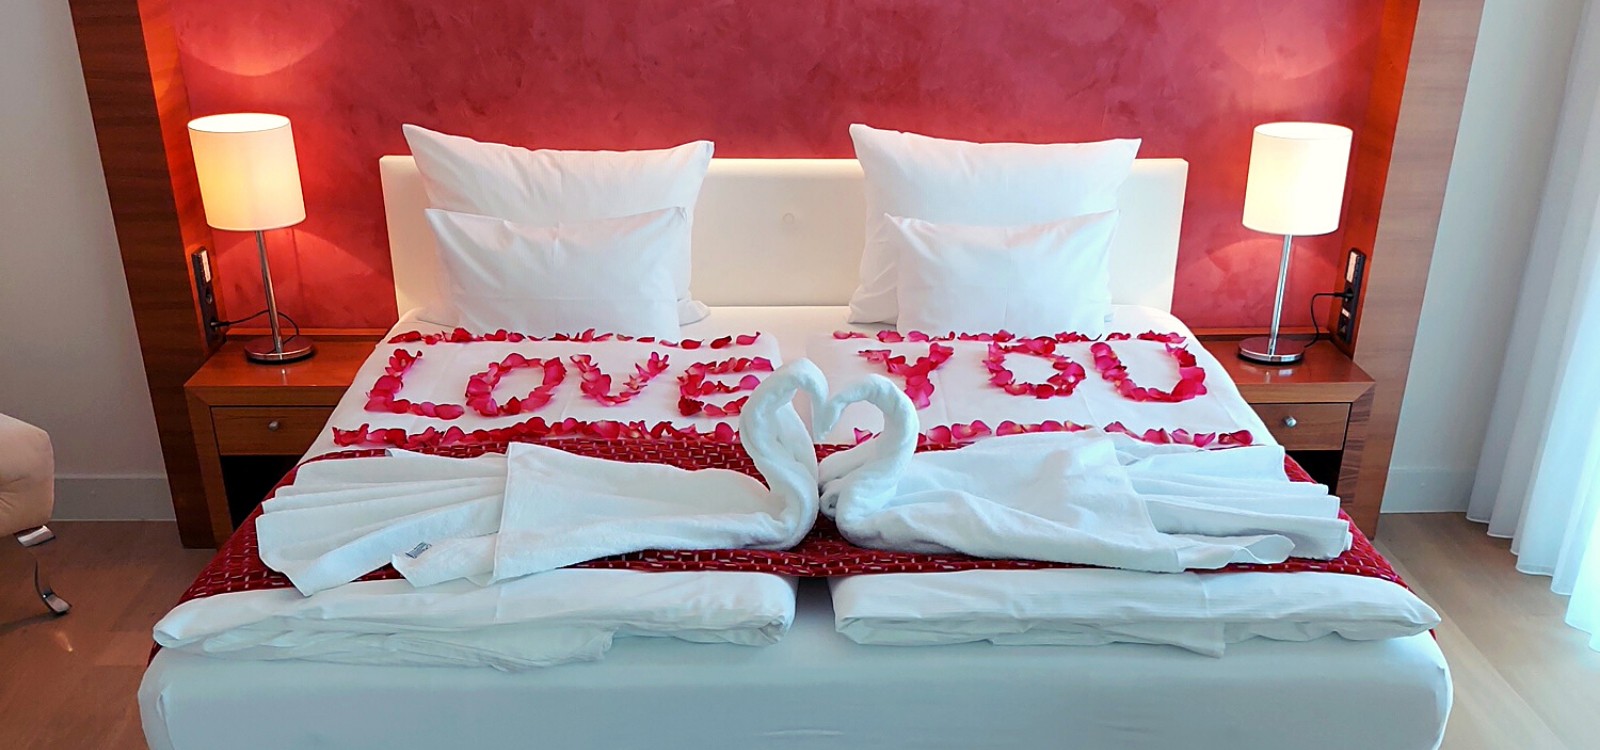 Ein romantisches Arrangement mit Rosenblättern auf dem Bett und zwei aus Handtüchern gefalteten Schwänen im Hotel in Baden-Baden